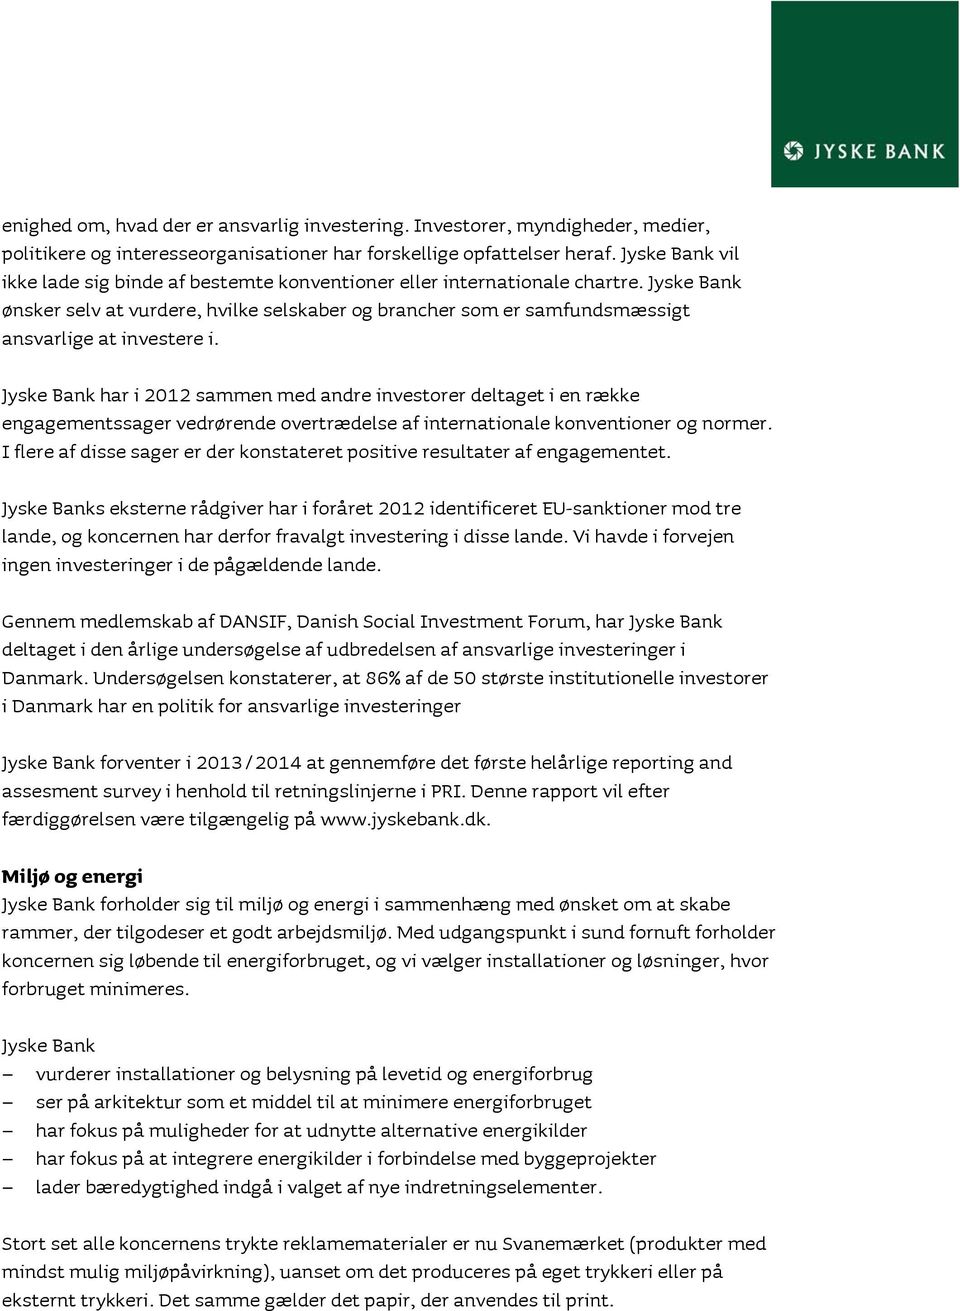 Jyske Bank ønsker selv at vurdere, hvilke selskaber og brancher som er samfundsmæssigt ansvarlige at investere i.